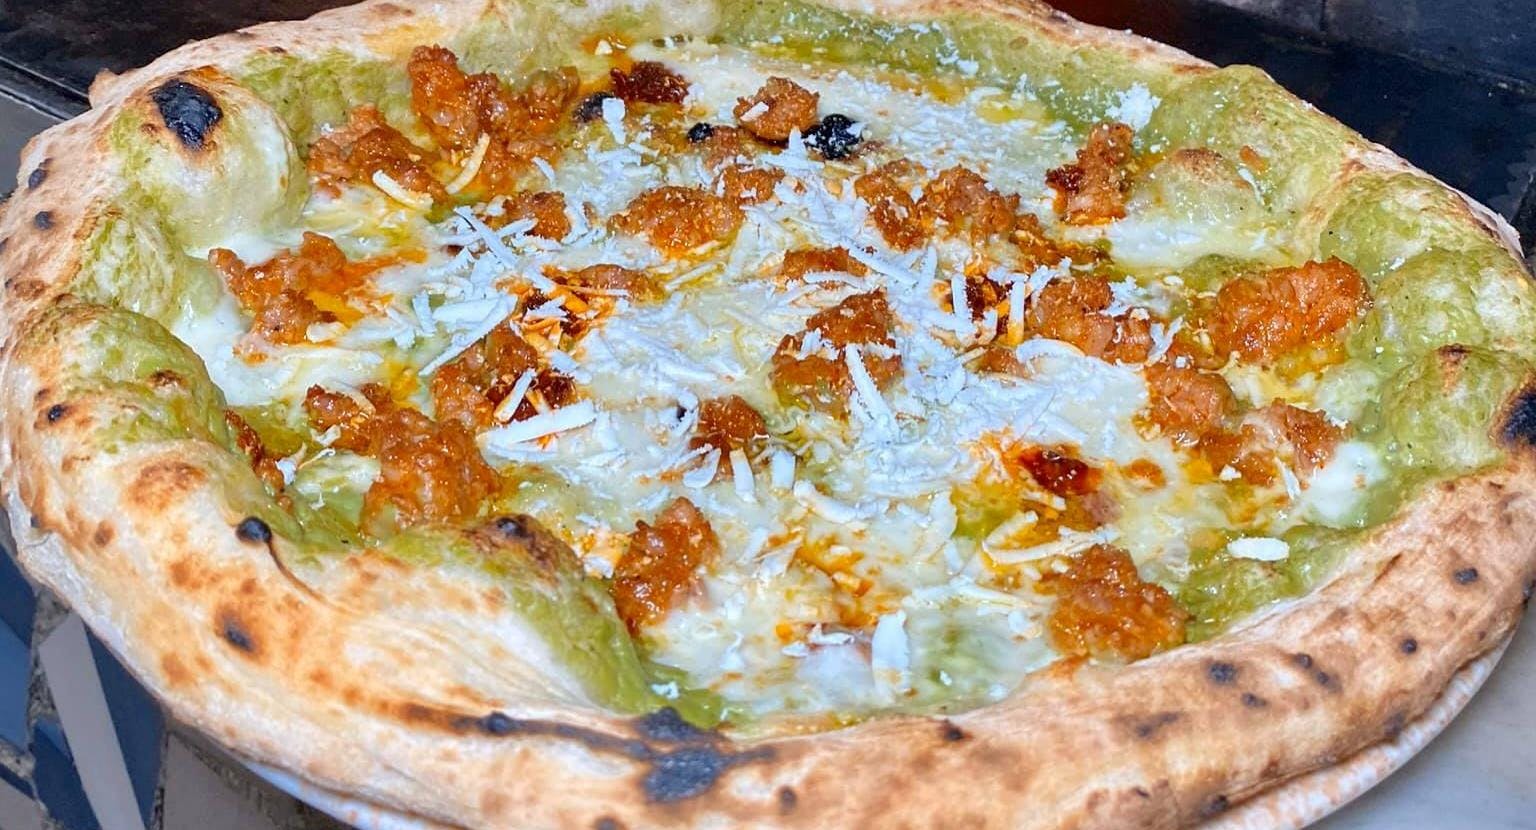 Photo of restaurant Morsi & Rimorsi - Pizzeria Aversa in Aversa, Caserta